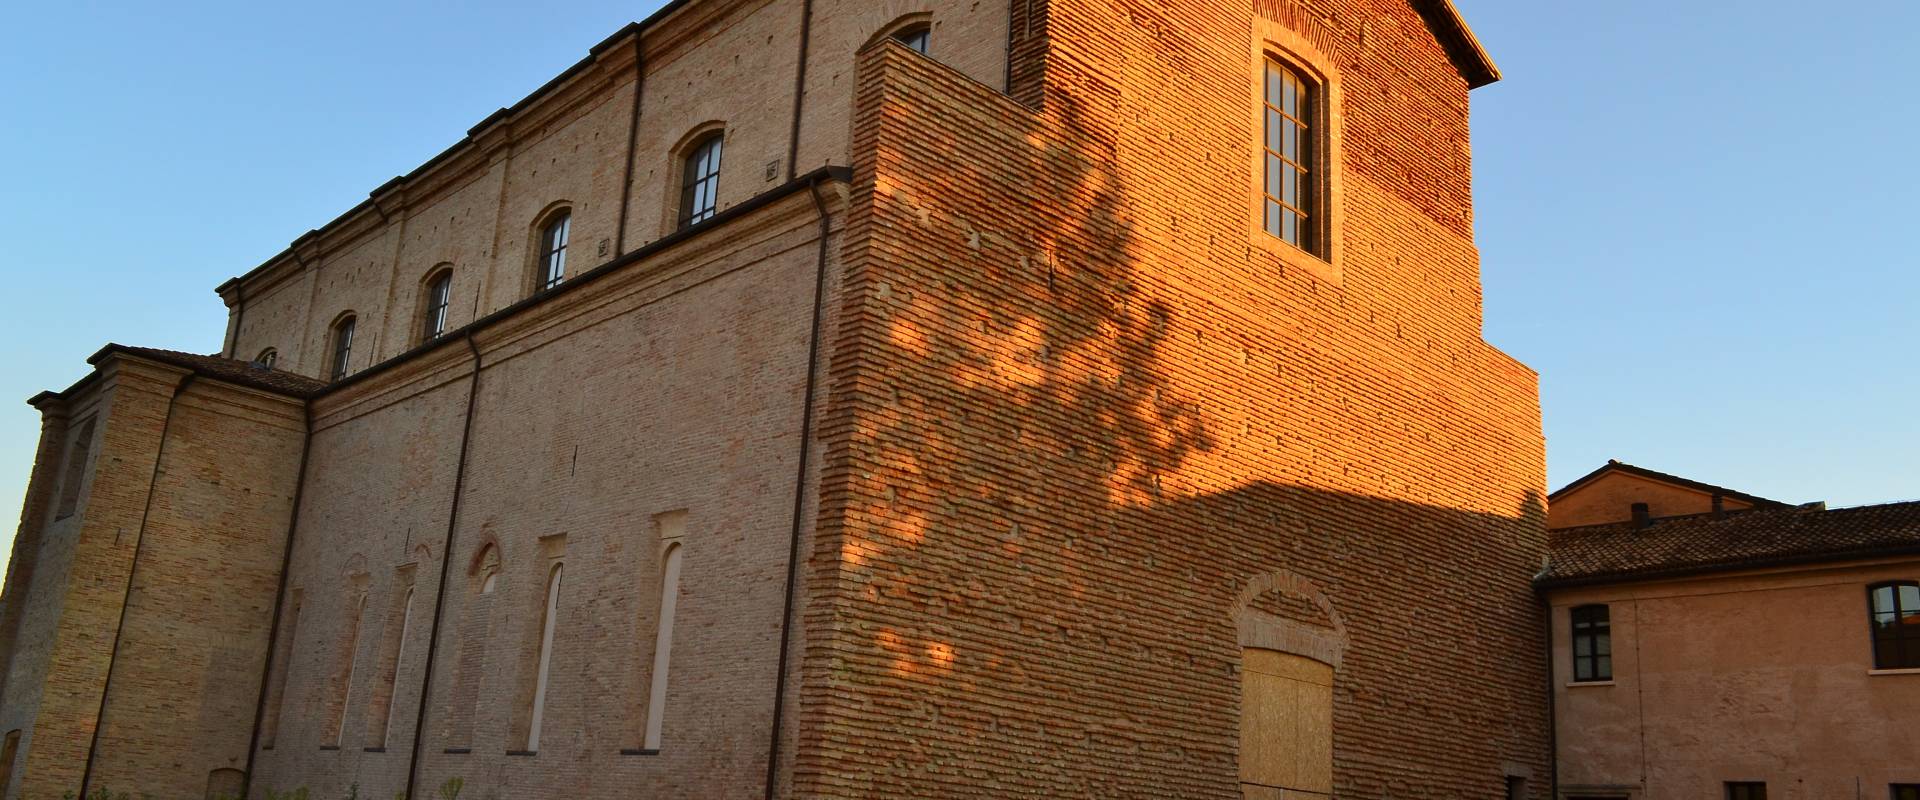 Chiesa San Giacomo, Forlì foto di -Riccardo29-